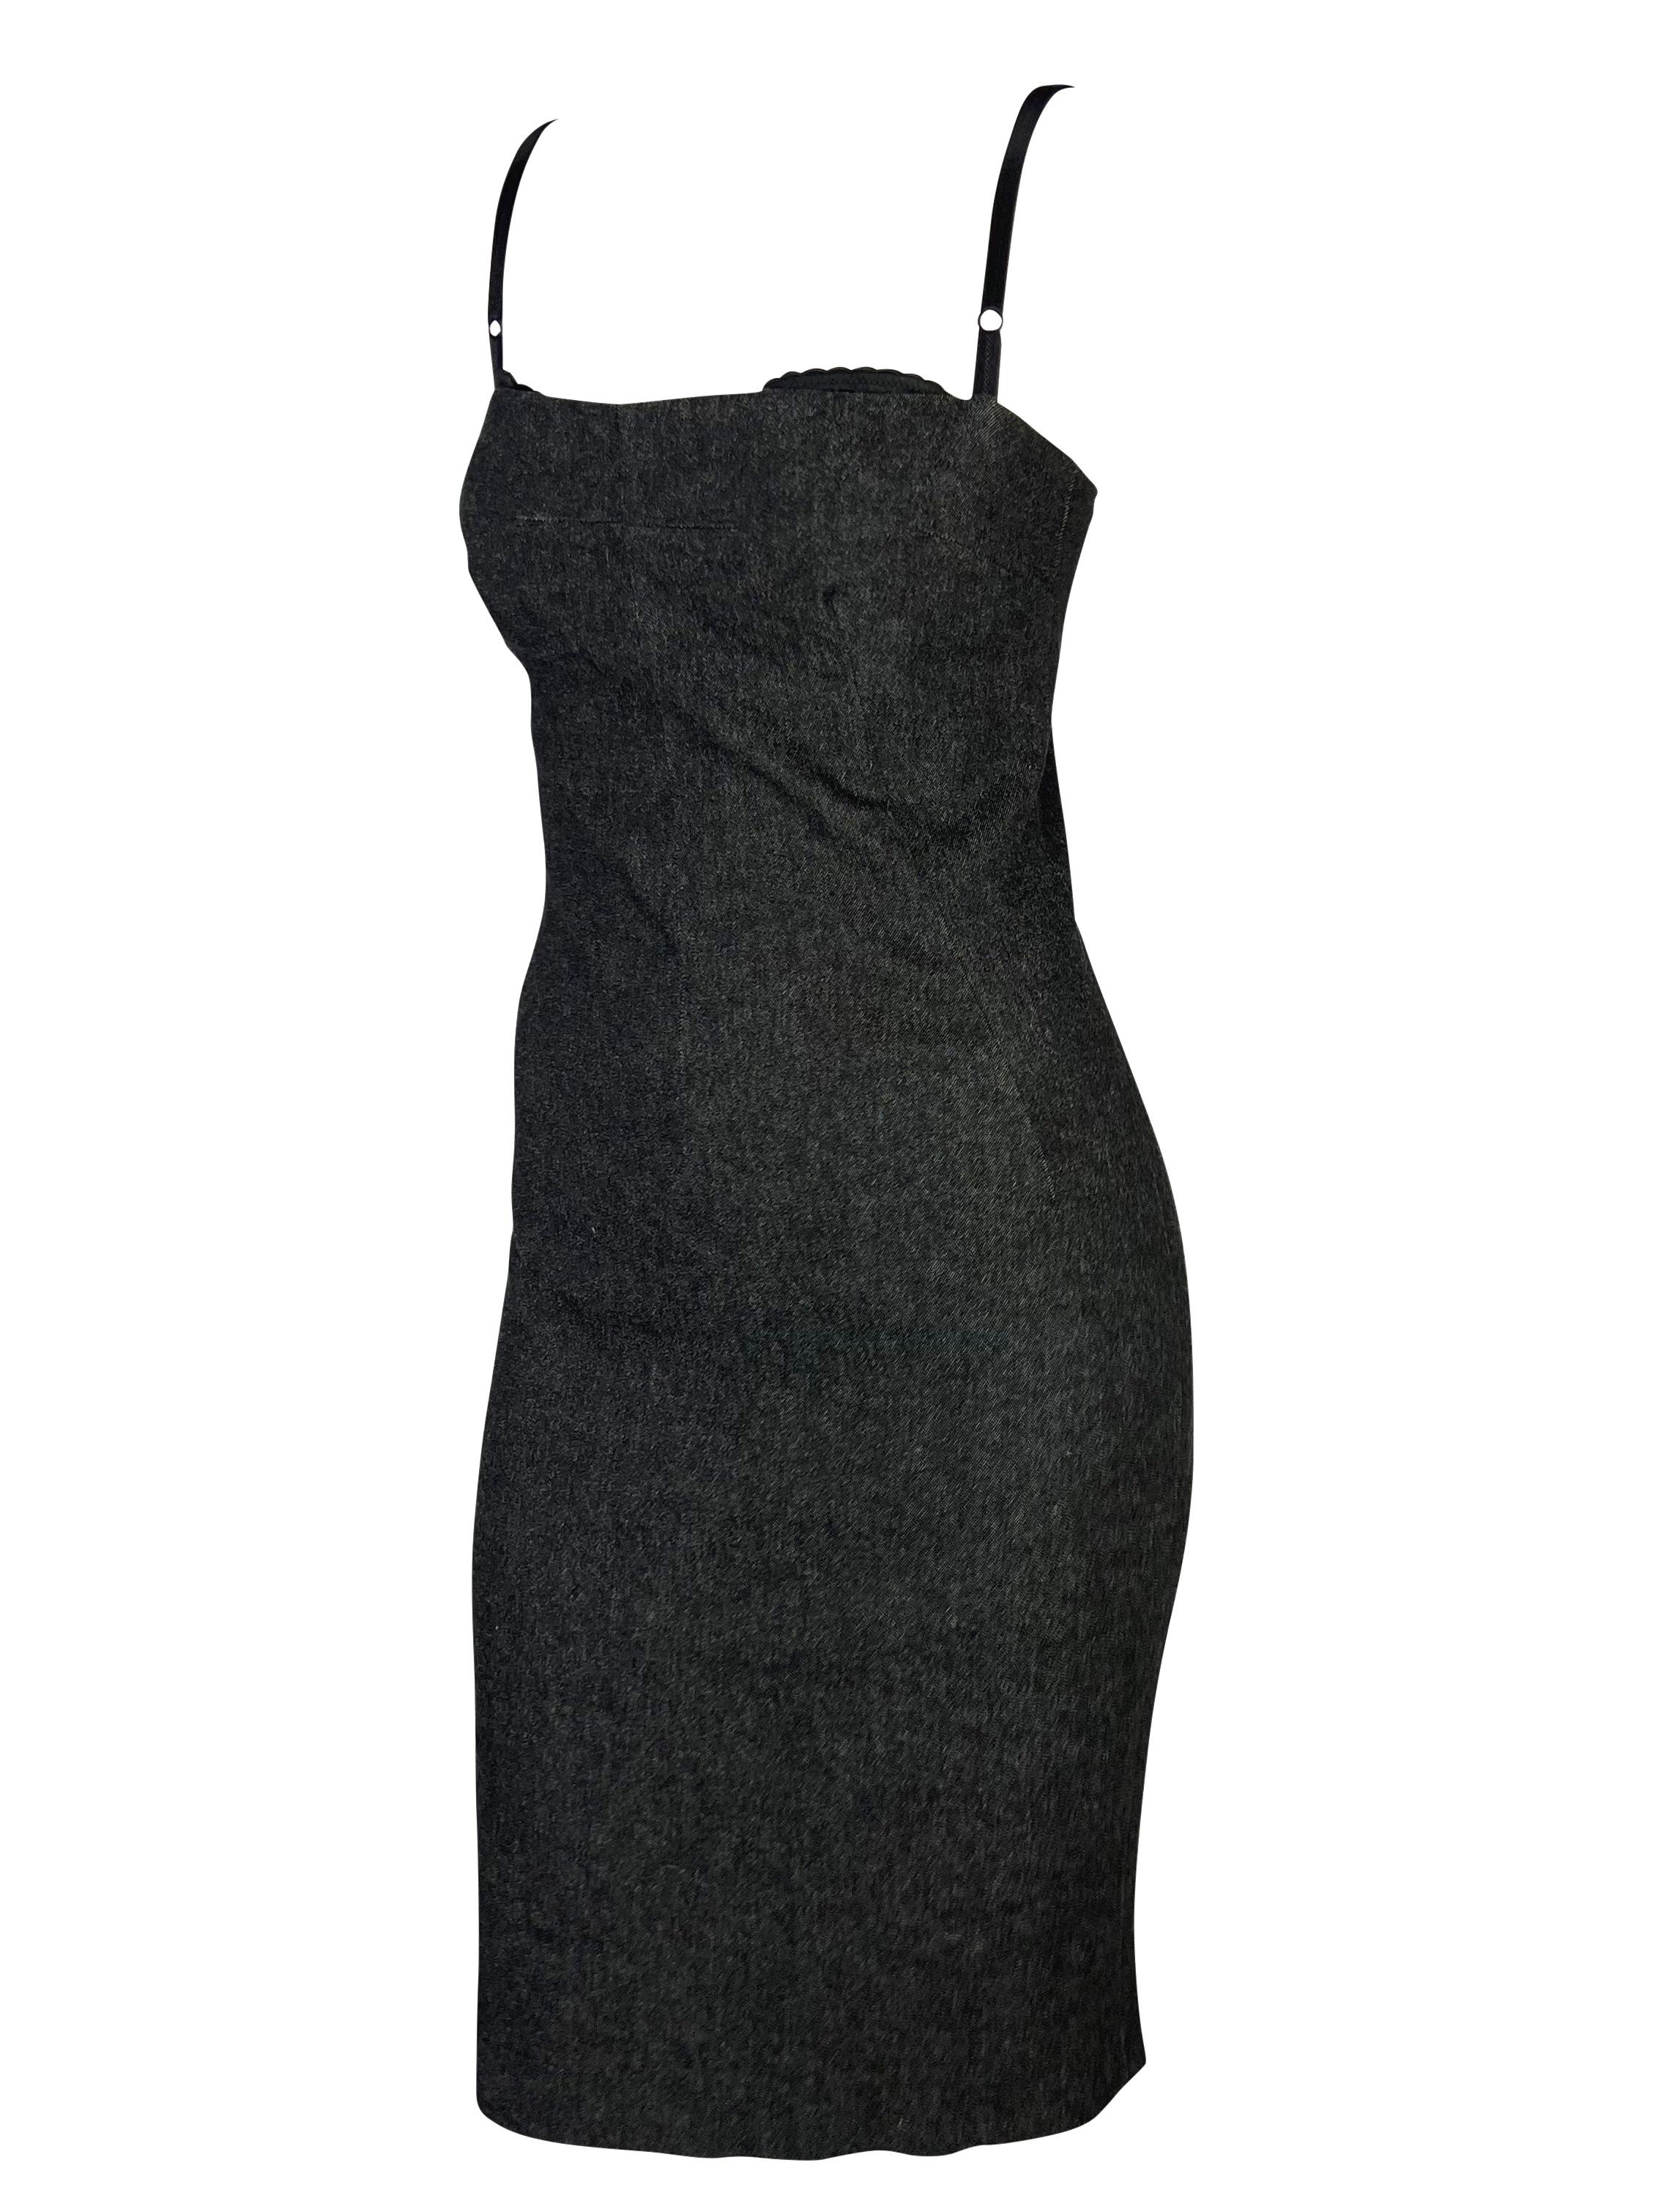 Ich präsentiere ein wunderschönes, dunkles Denim-Bodycon-Kleid von Dolce & Gabbana mit Pin-up-Effekt. Dieses wunderschöne Kleid aus den späten 90er/frühen 2000er Jahren ist aus dunklem Faux Denim gefertigt und hat einen quadratischen Ausschnitt. Im